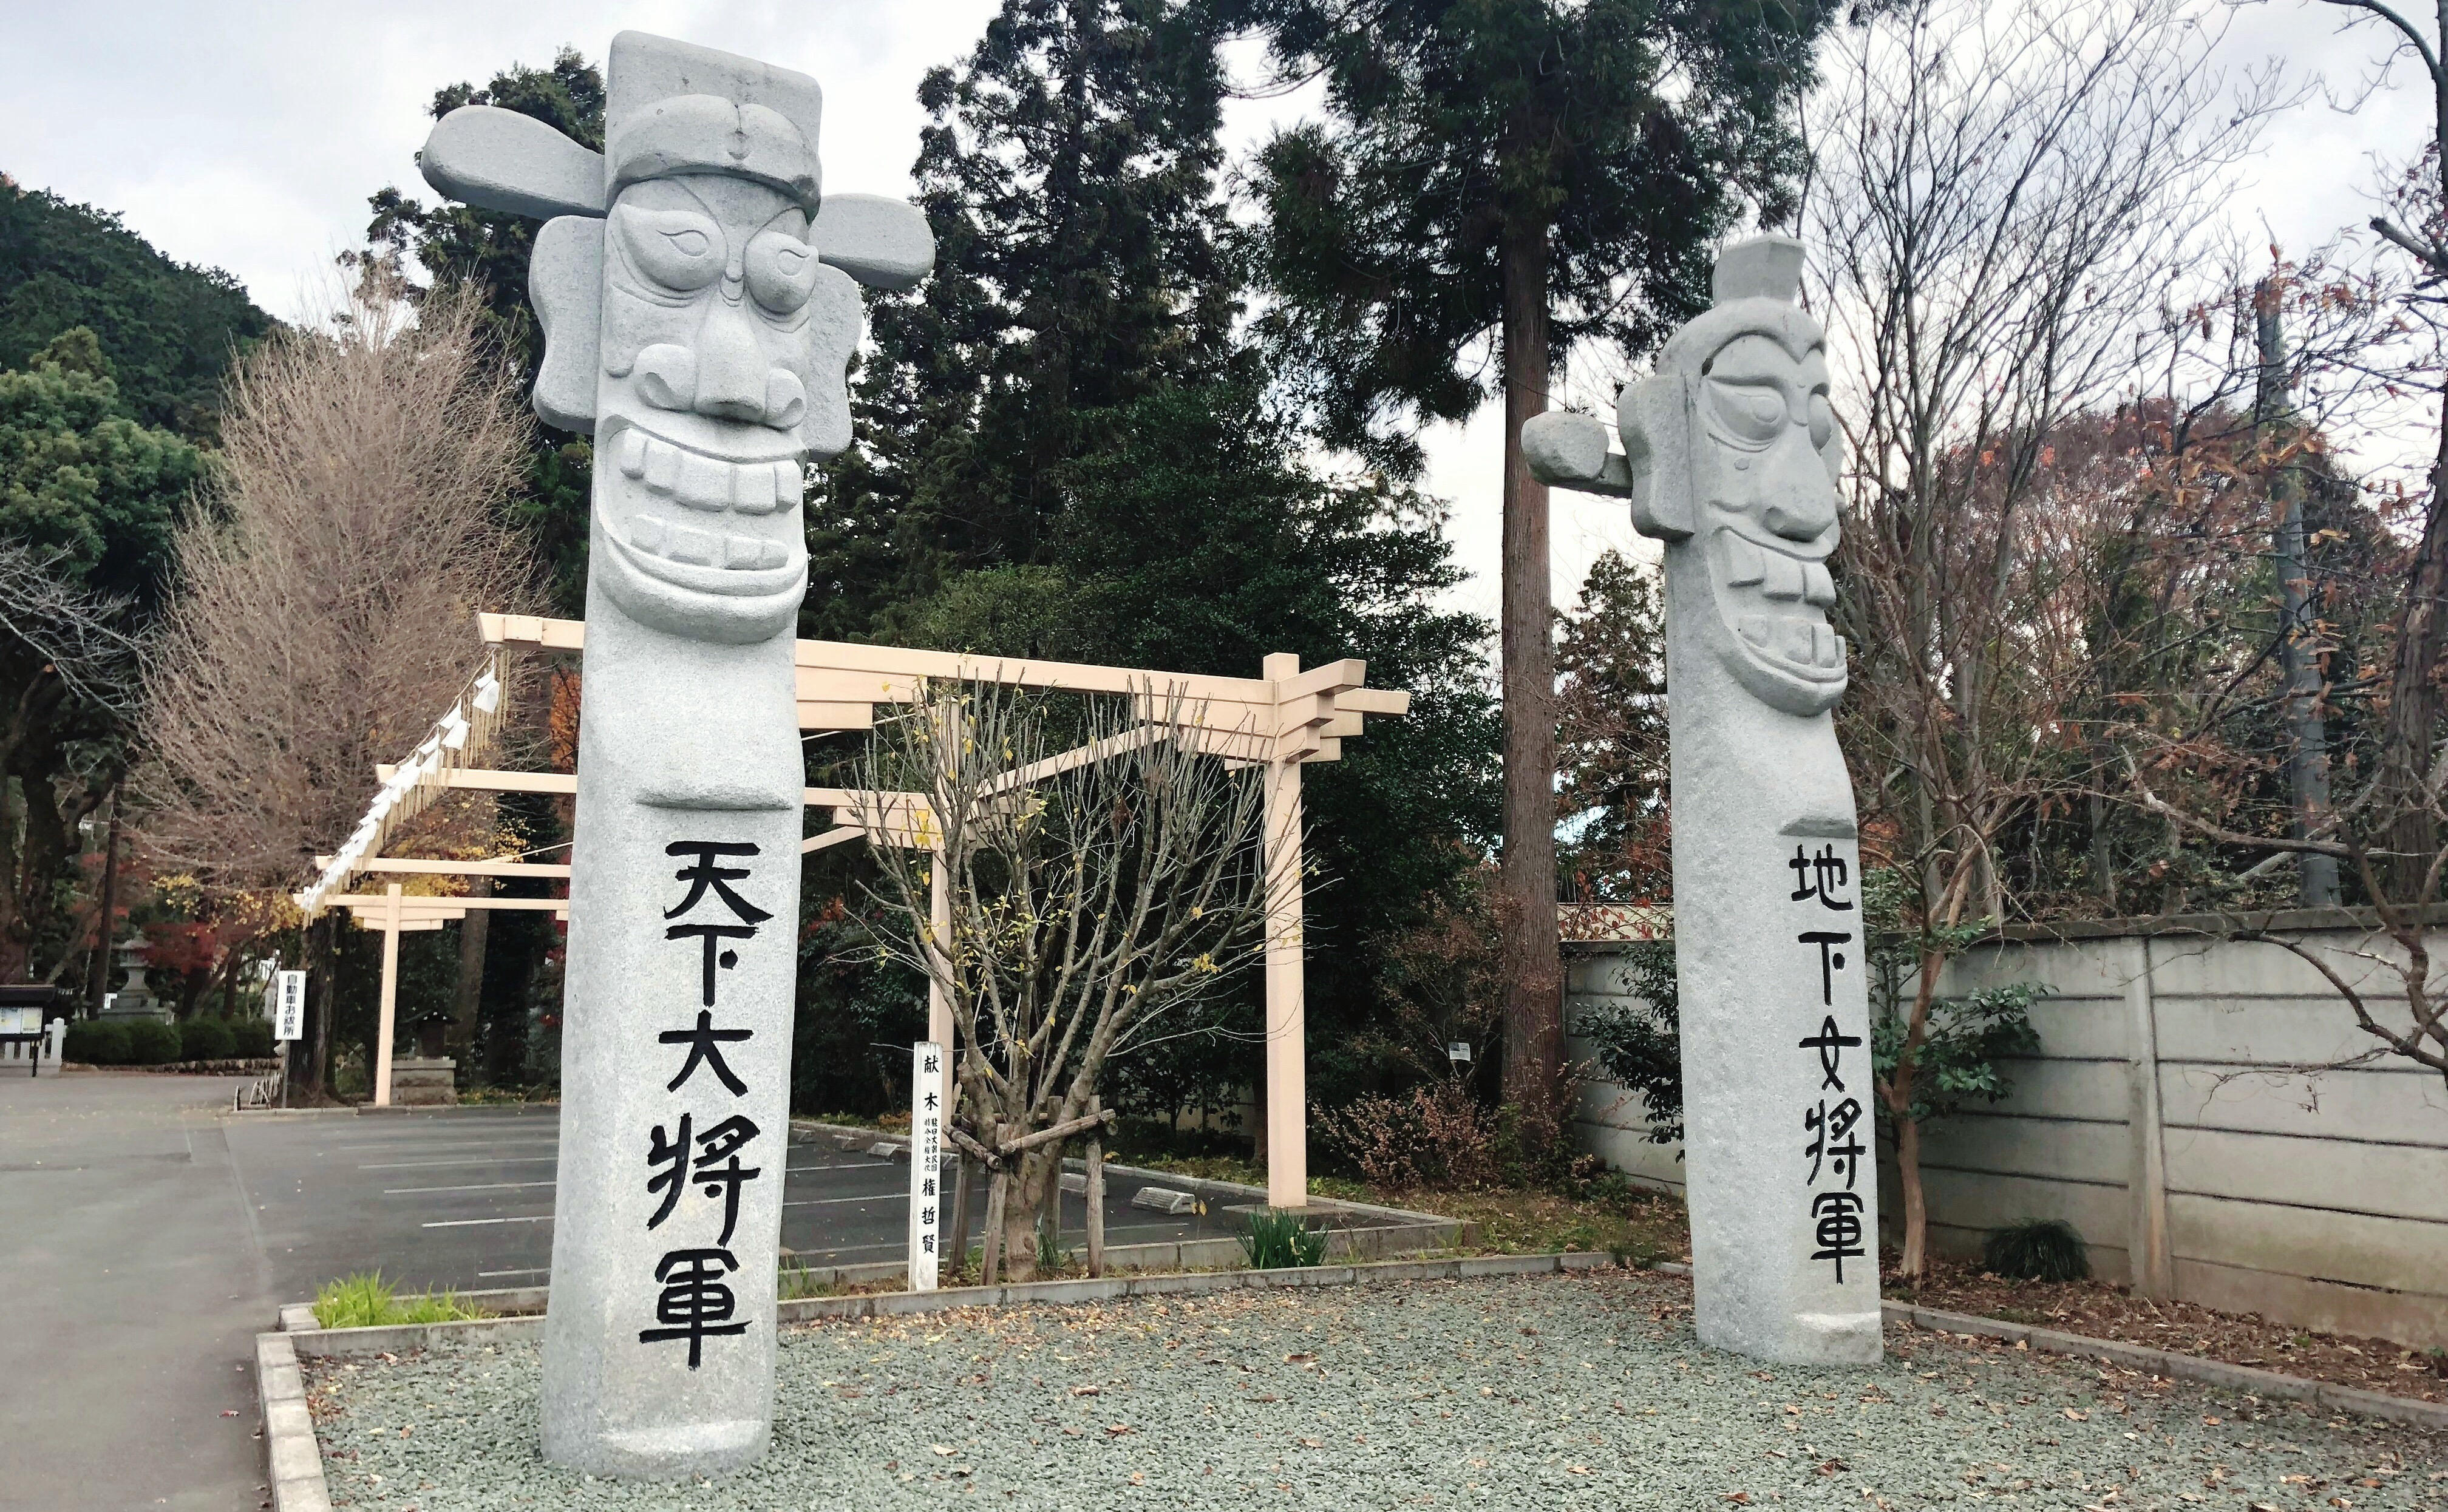 年末詣のススメ 高麗神社 おまいり日和blog おまいり日和blog